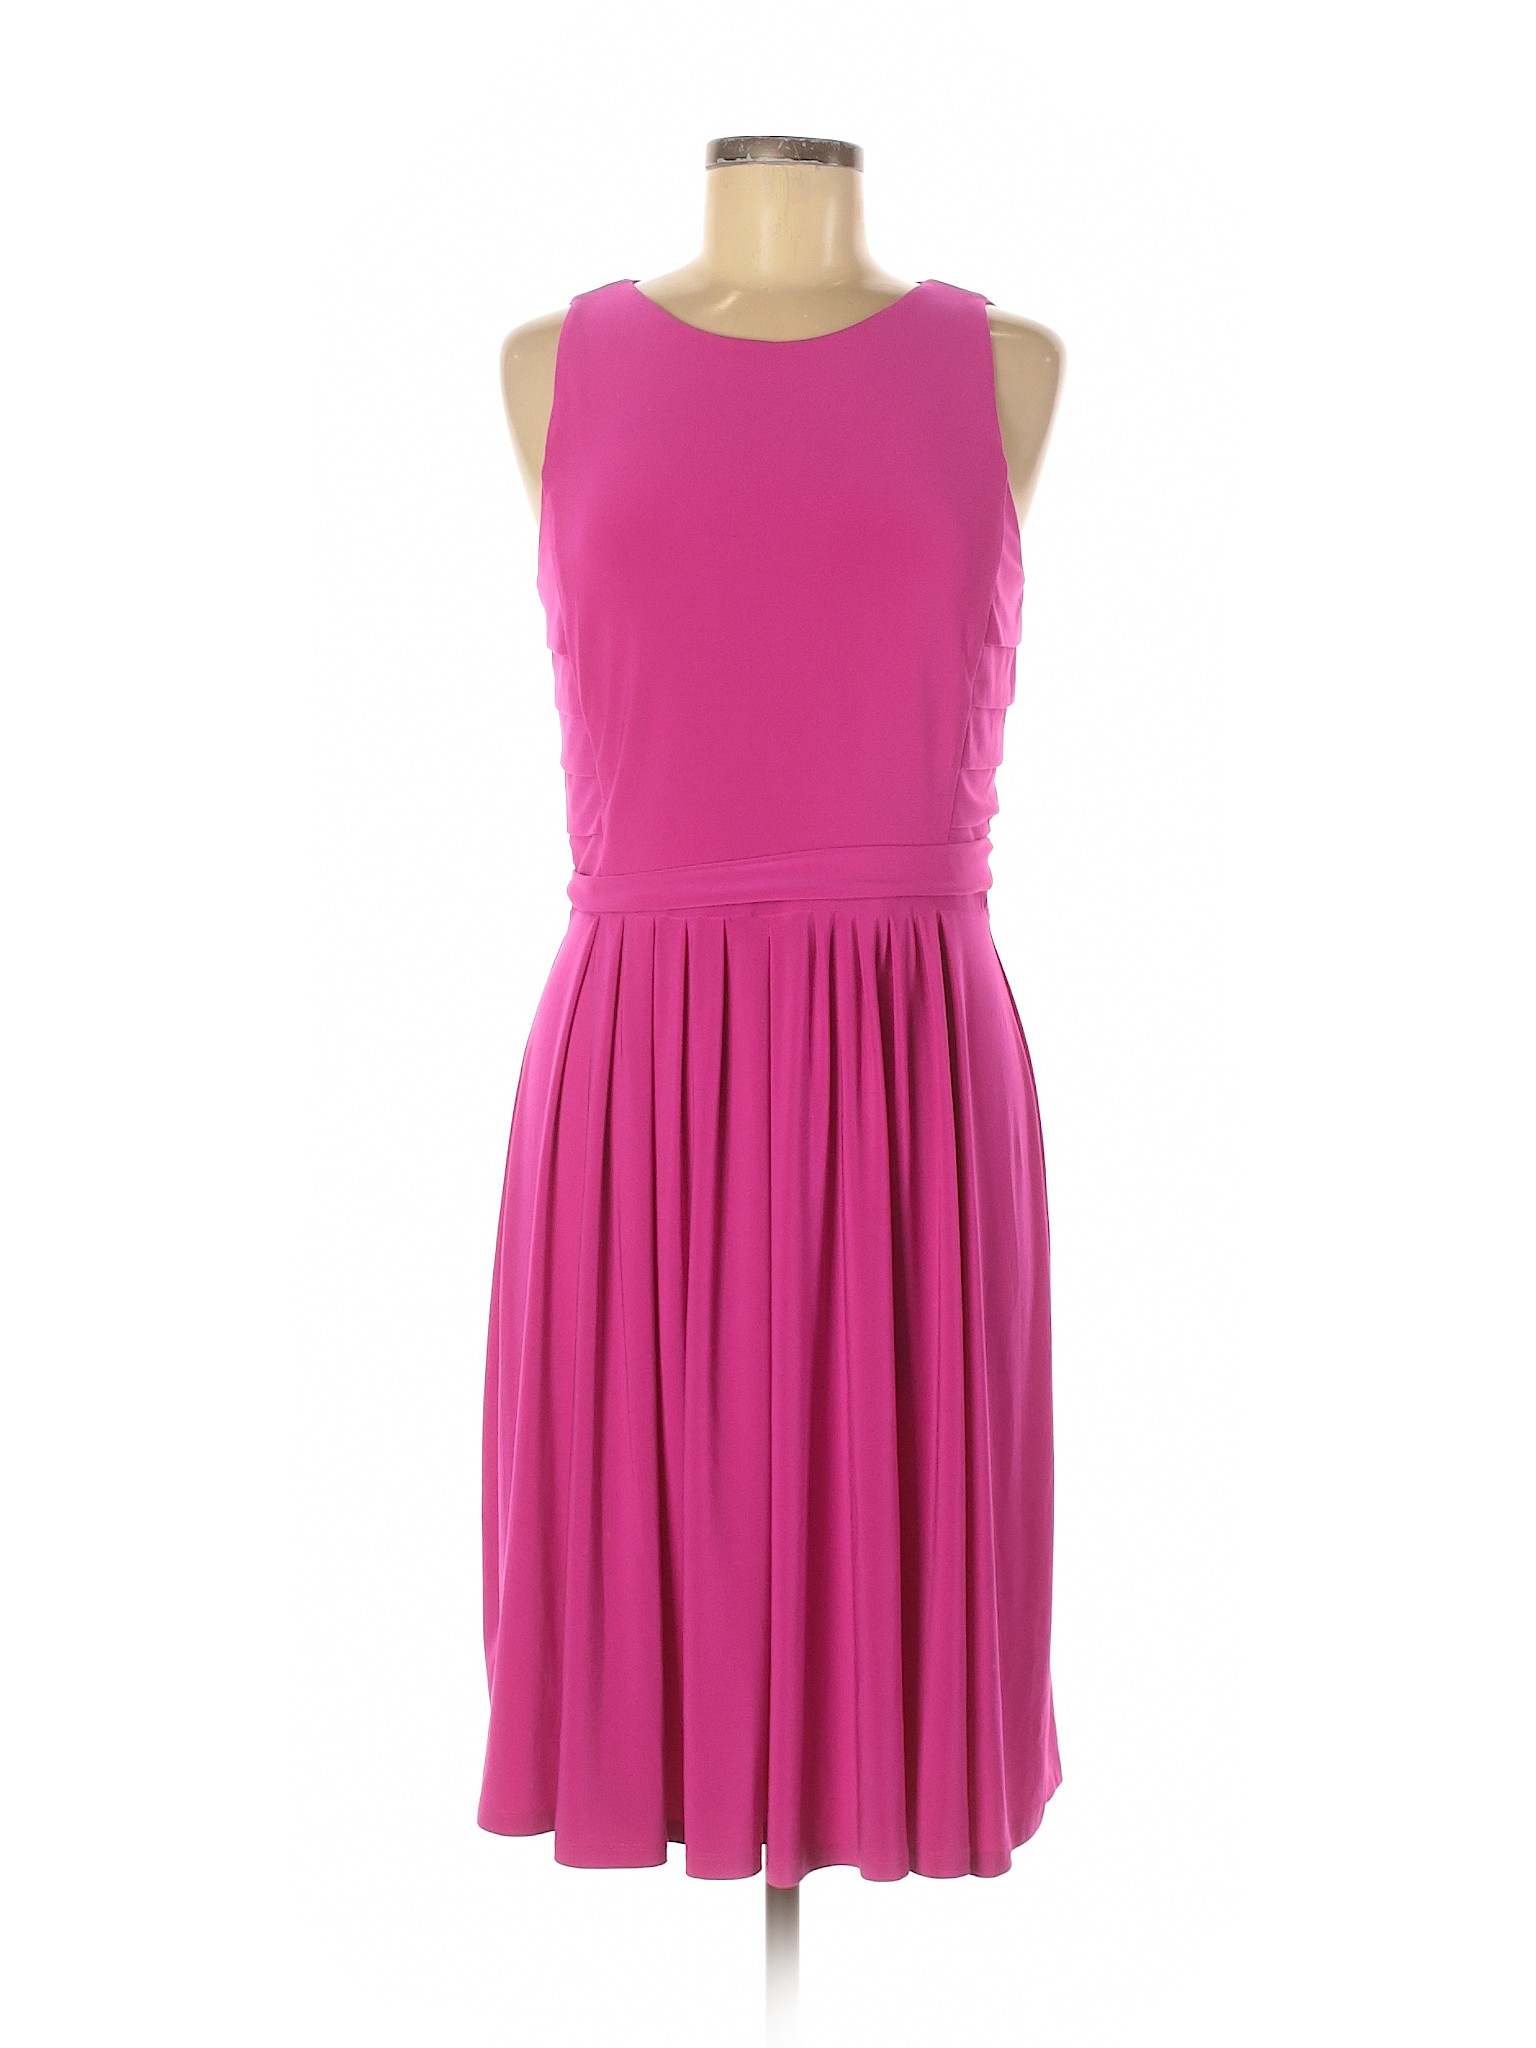 Lauren by Ralph Lauren Women Pink Casual Dress 8 | eBay